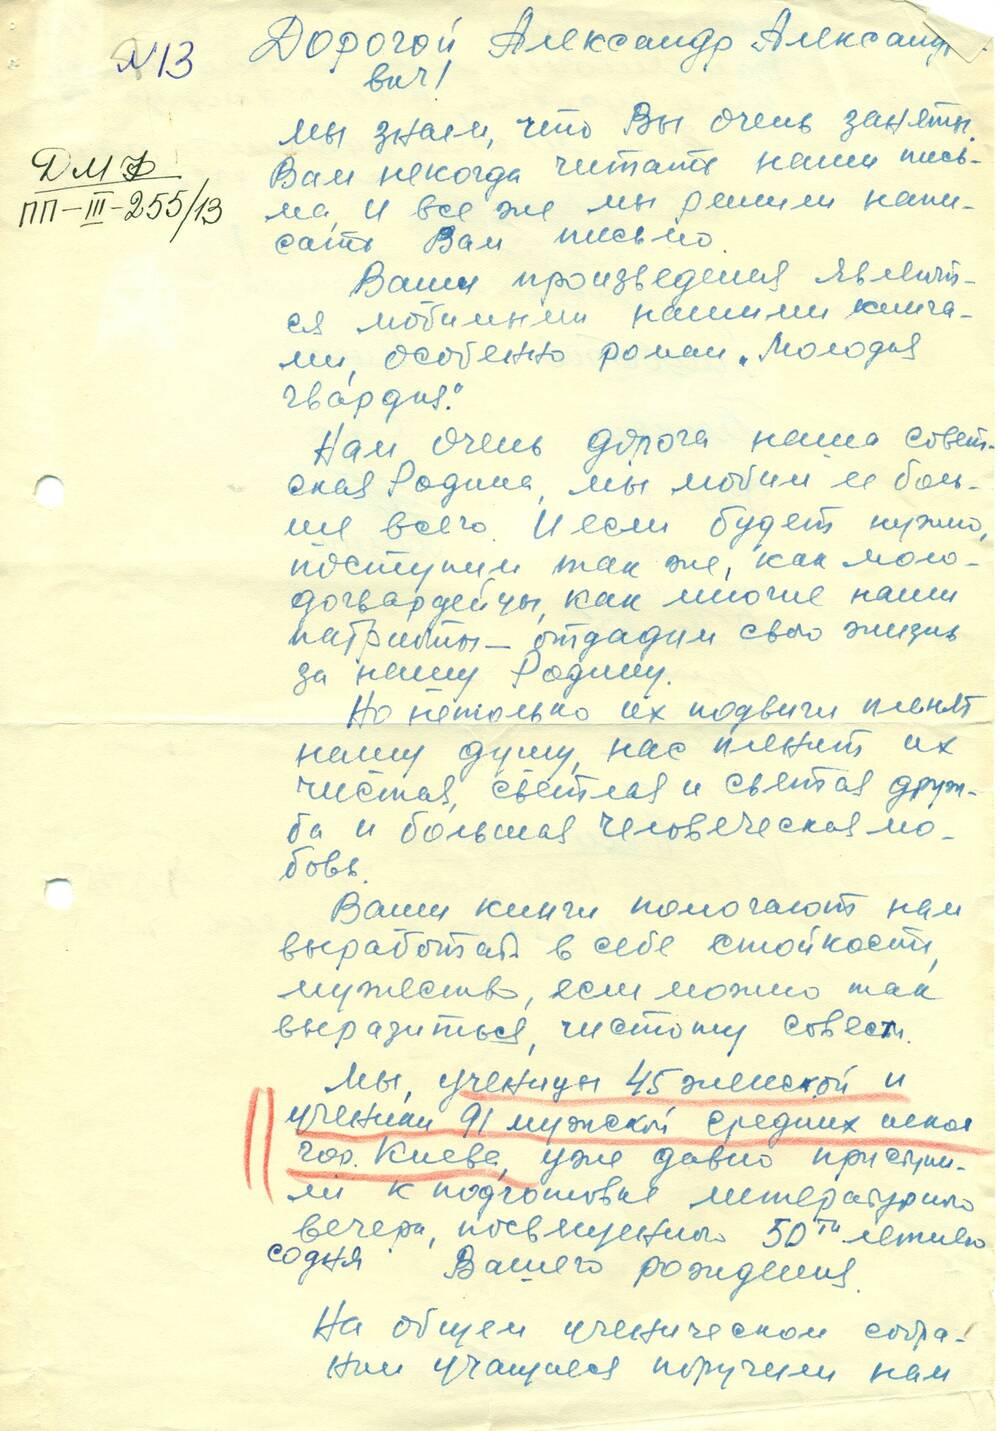 Письмо от учащихся школы №45 г. Киева - Фадееву А.А., поздравление с 50-летием